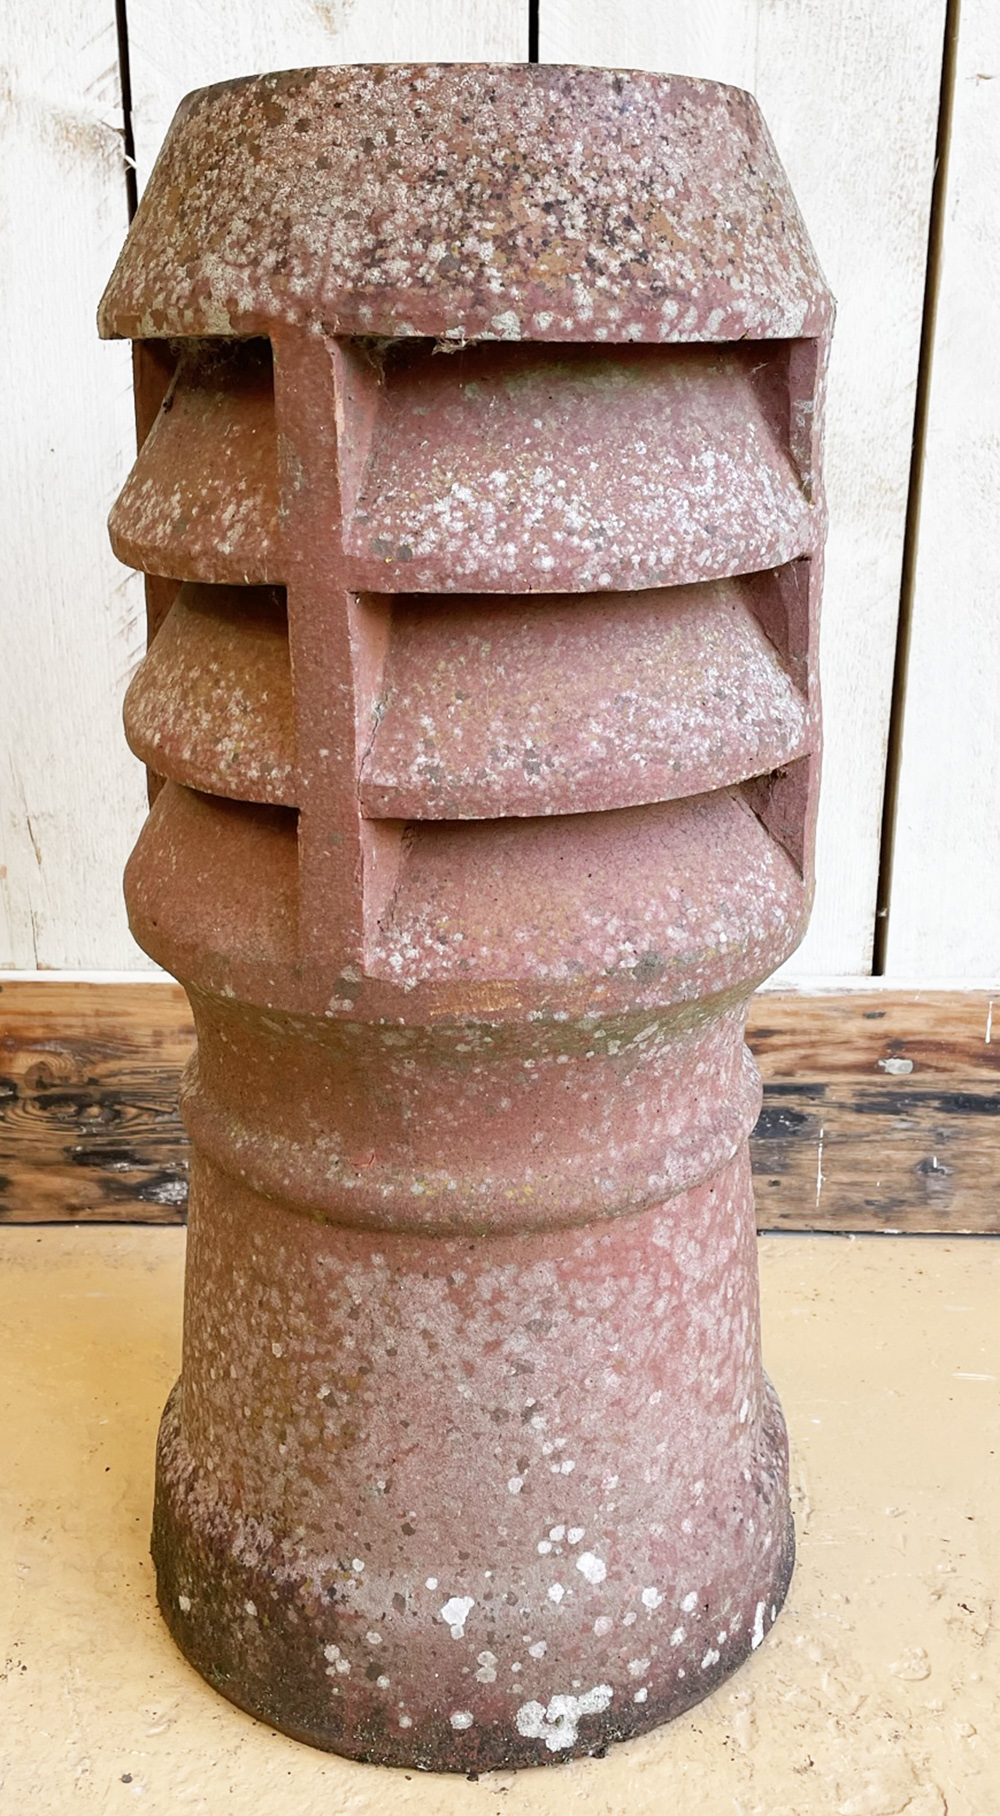 Conc cap 1 | Decorative Chimney Pot with Vents